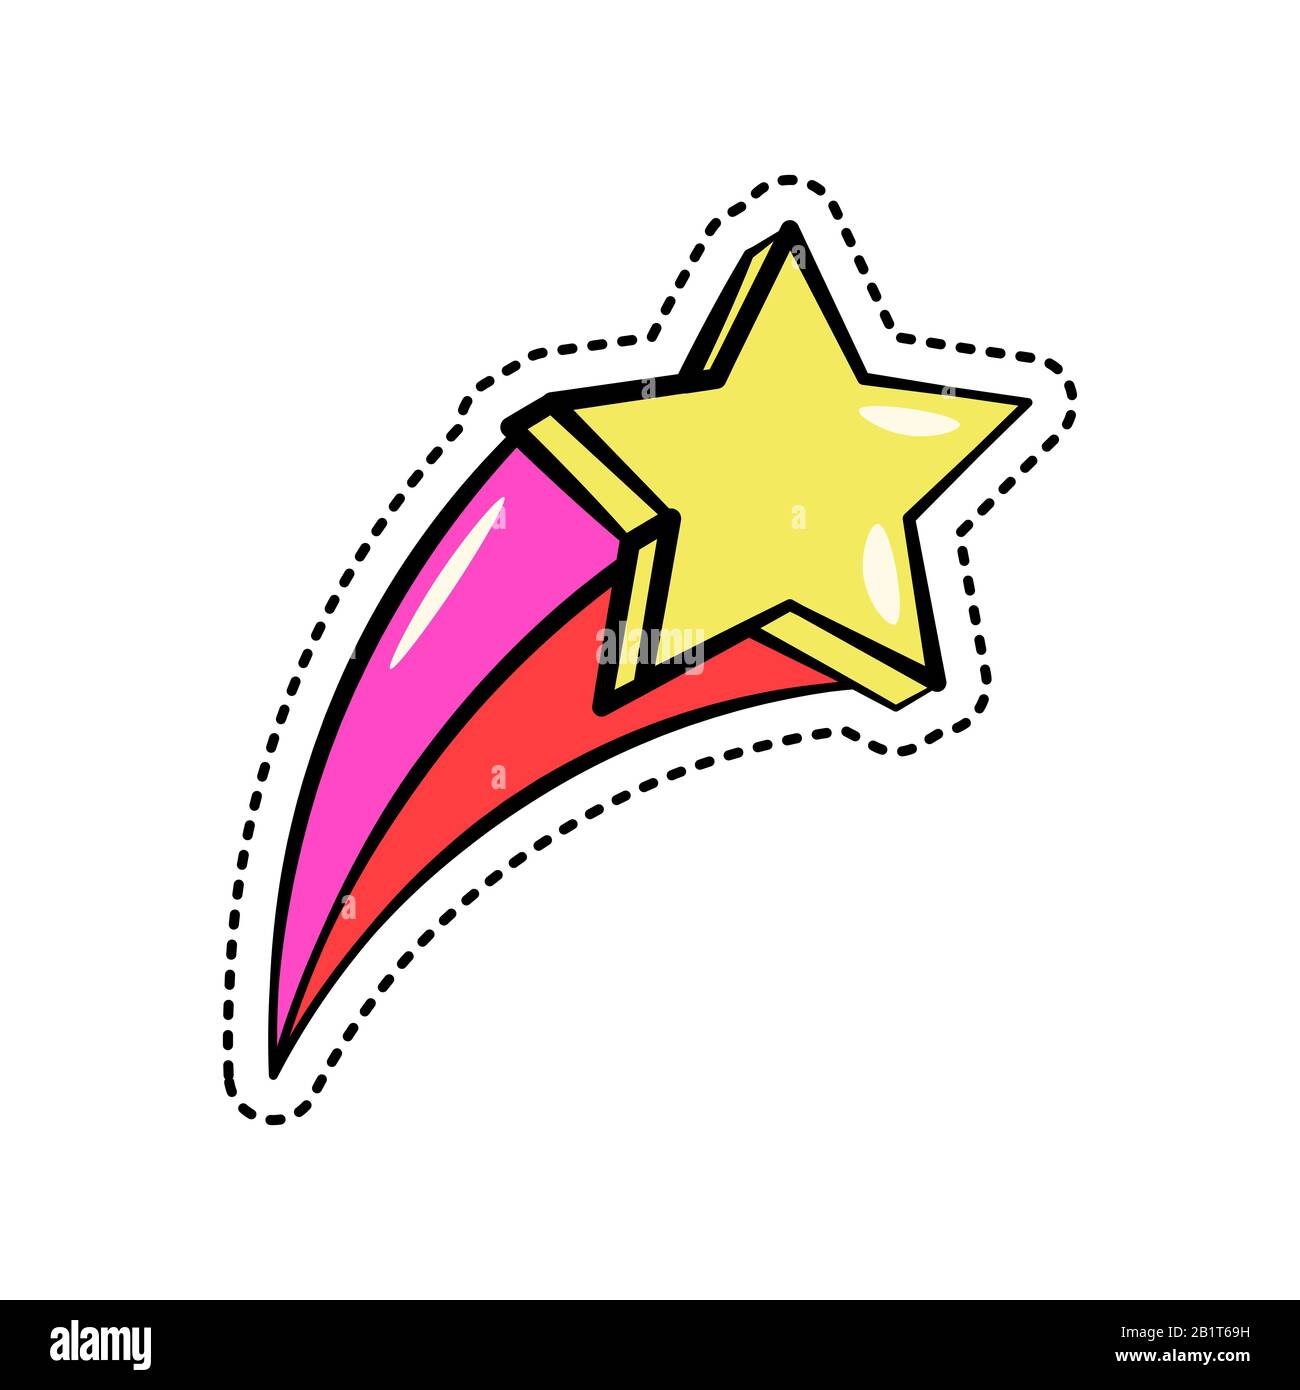 Adesivo colorato di moda con stella gialla cadente, rosa lucido e traccia rossa, elegante patch badge isolato, illustrazione vettoriale. Illustrazione Vettoriale